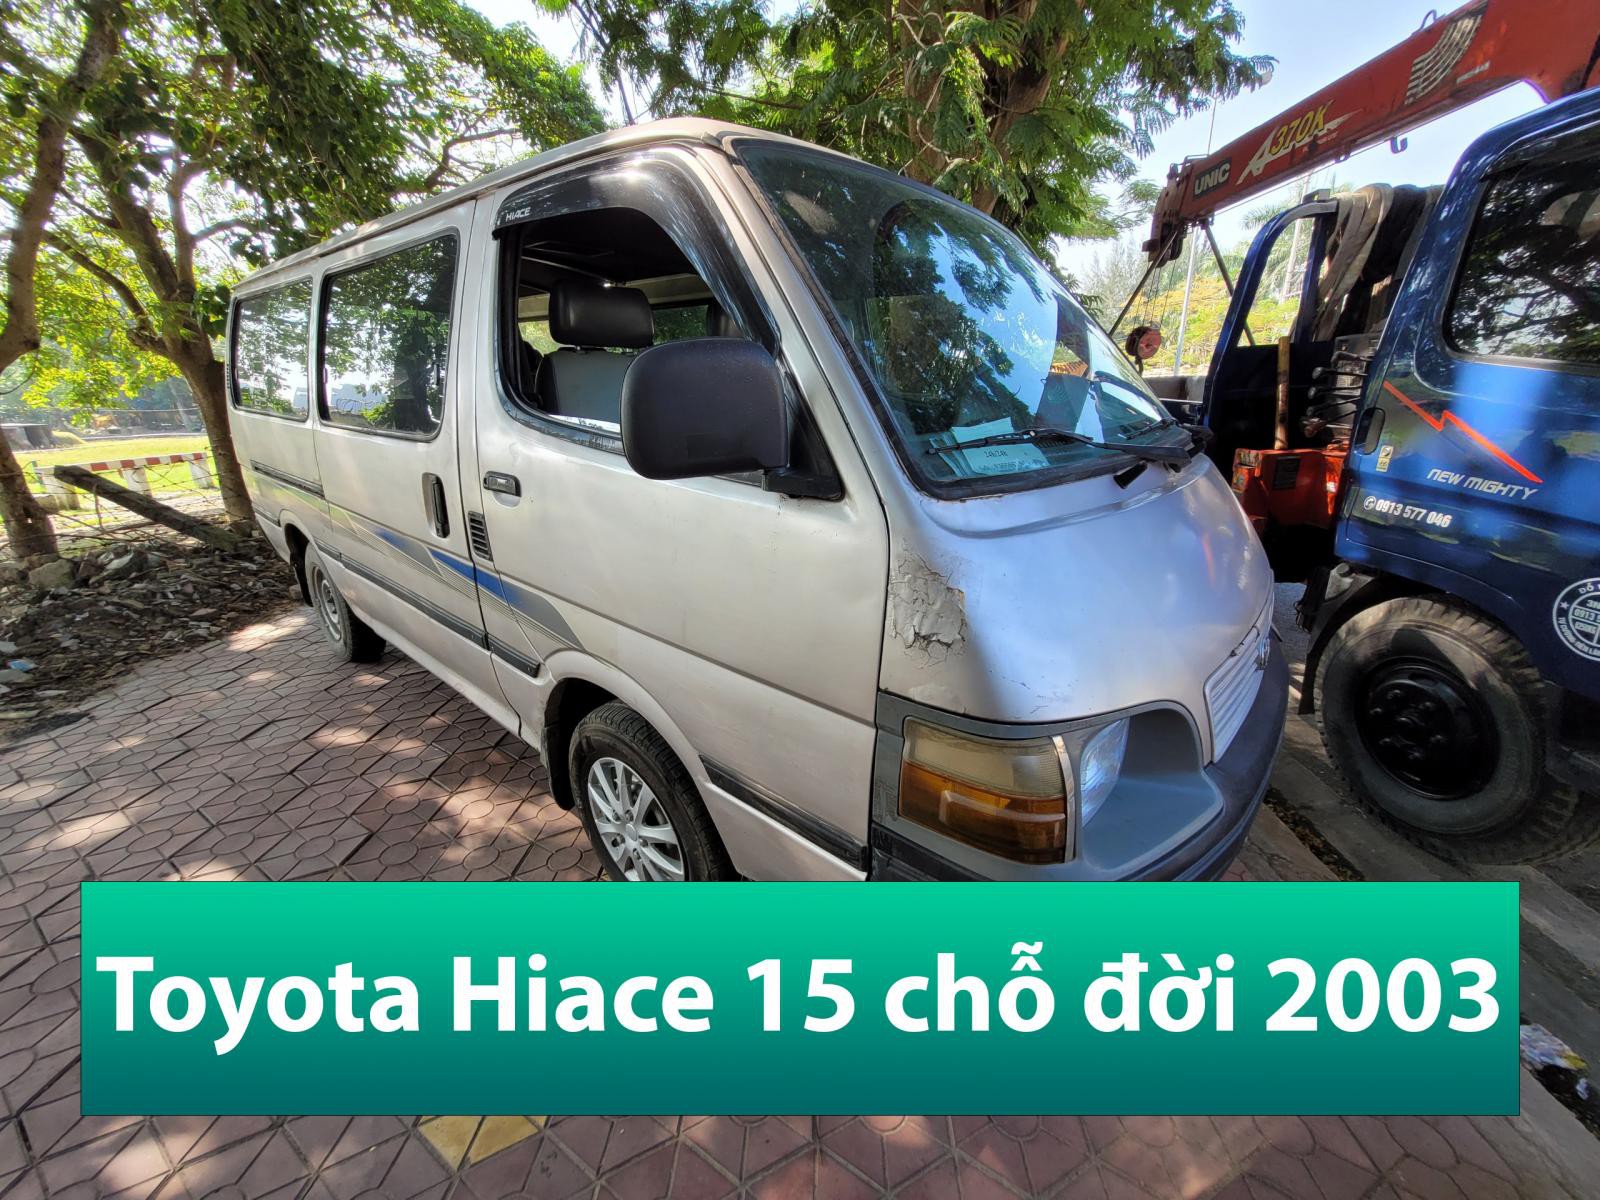 Bán xe khách Toyota Hiace 15 chỗ cũ đời 2003 tại Hải Phòng liên hệ 090.605.3322